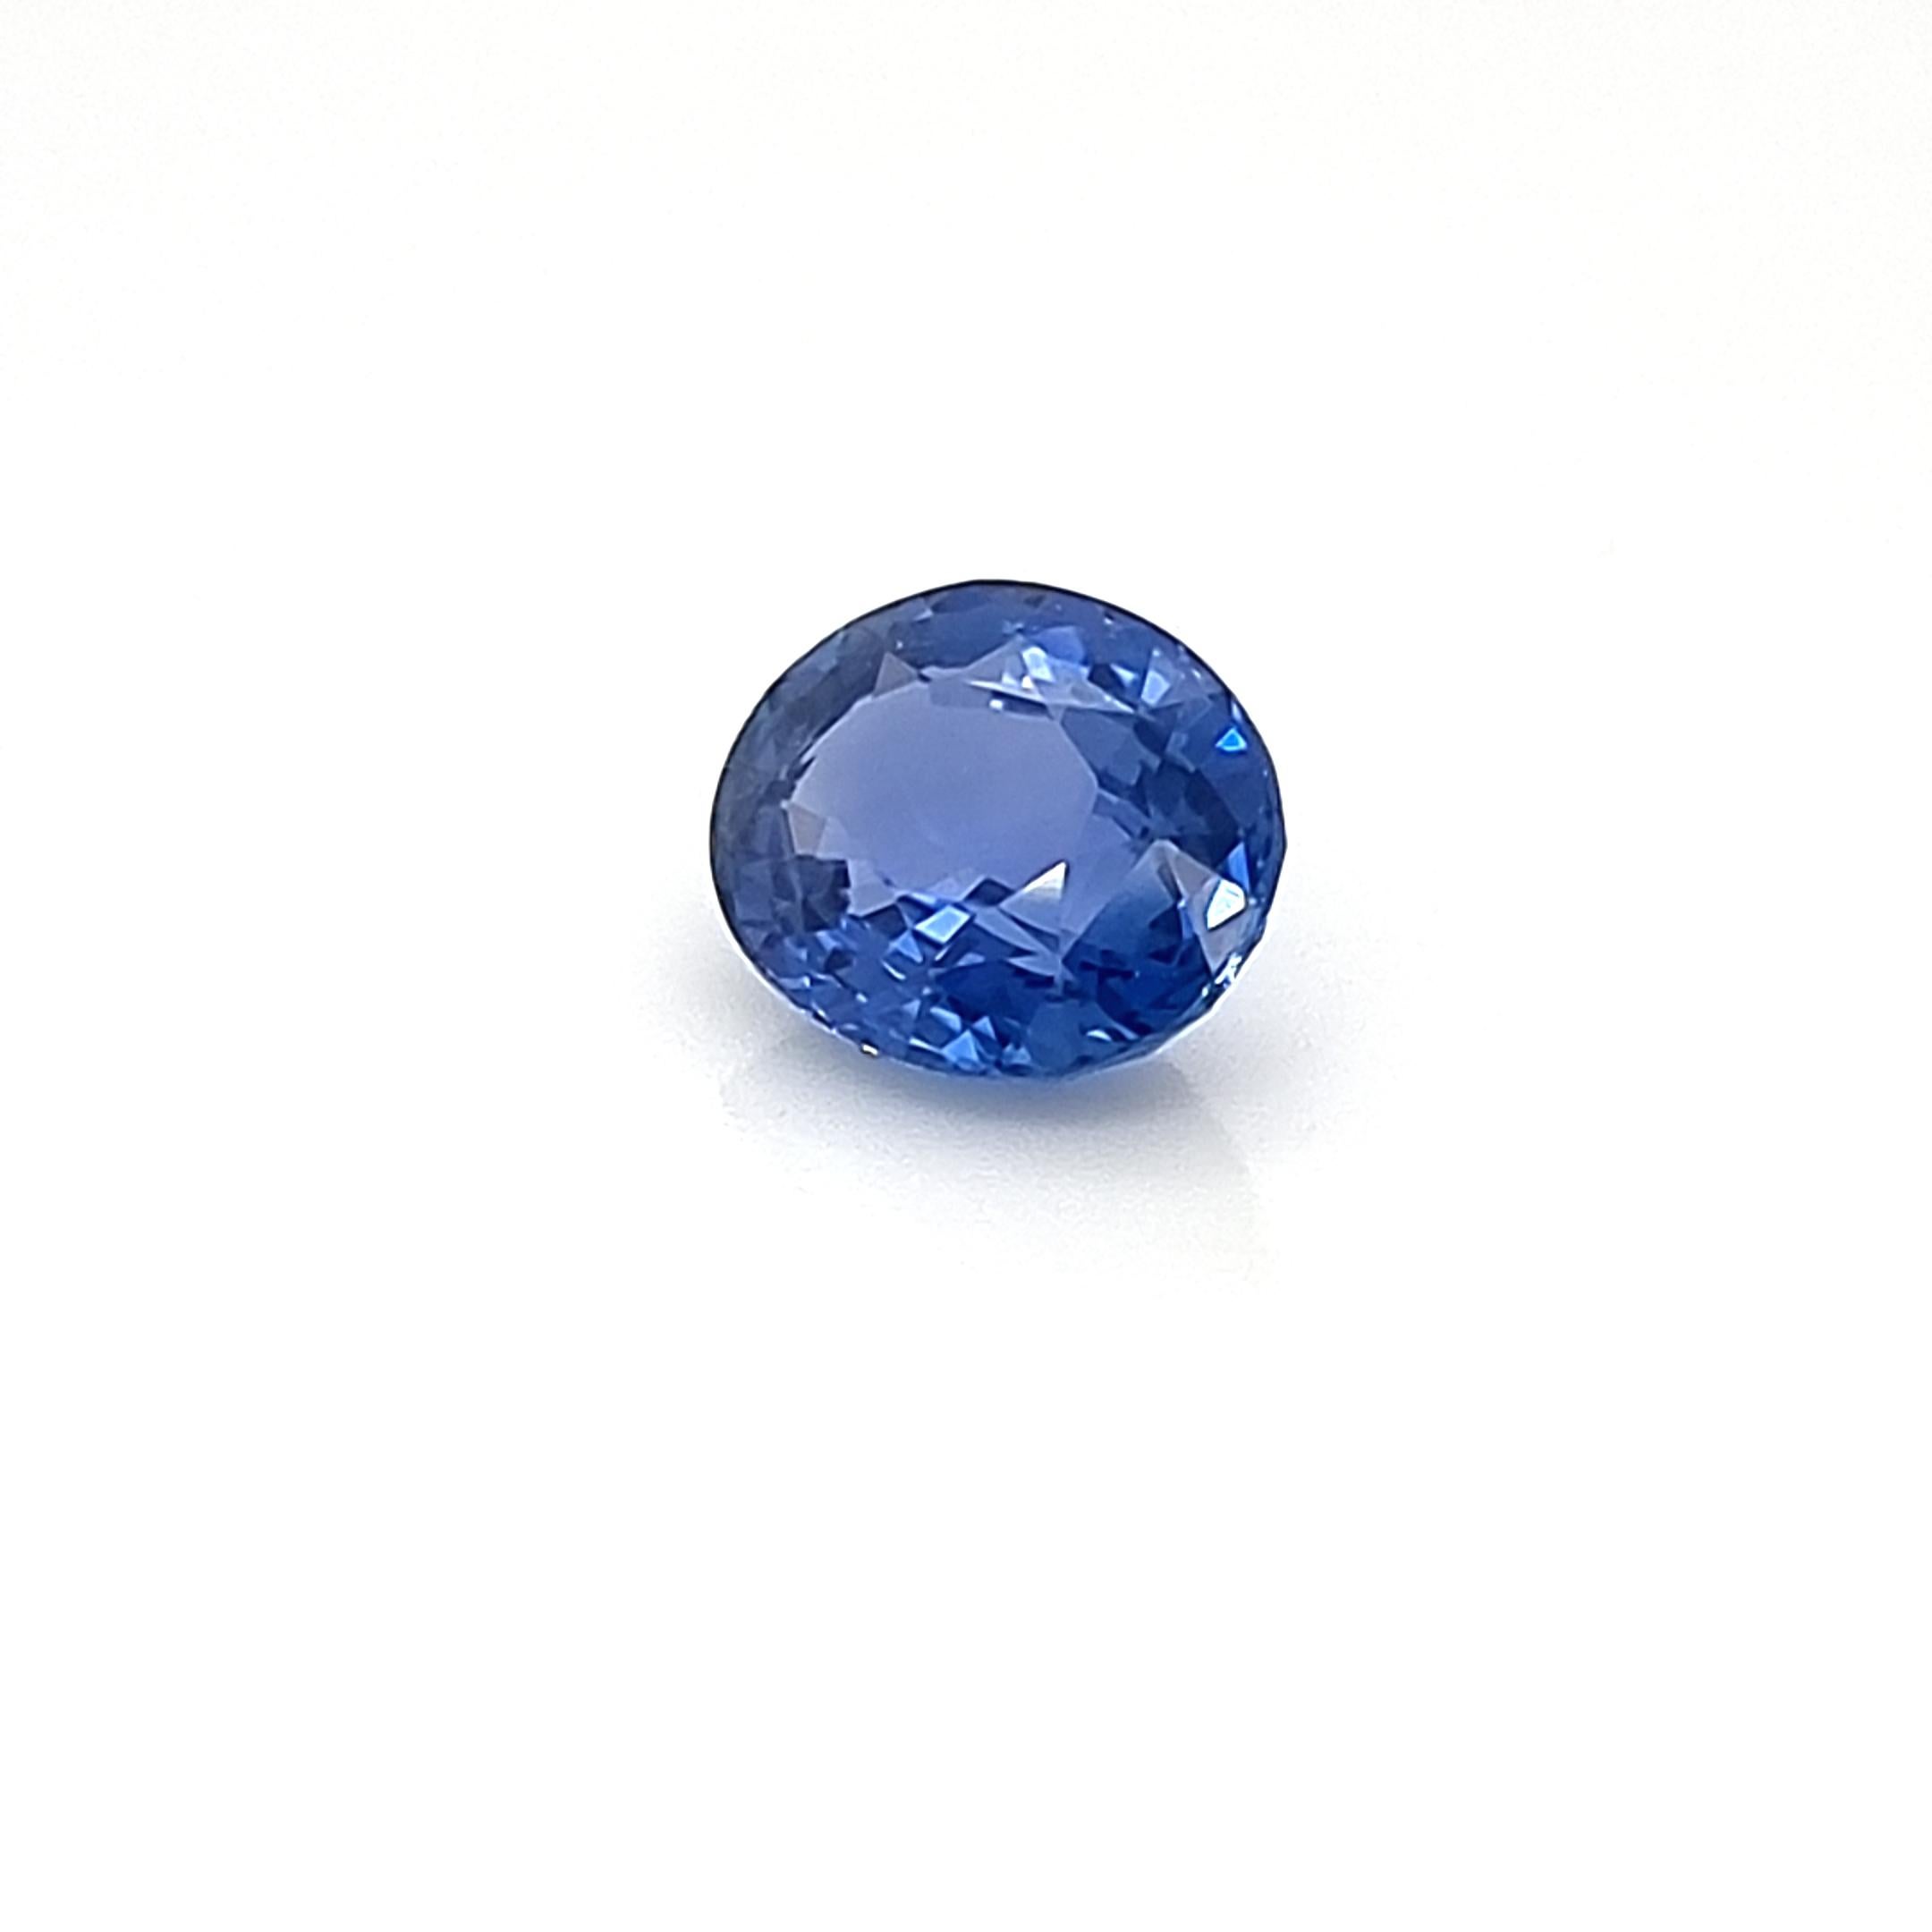 Blue Oval Sapphire Sri Lanka 5.18 TCW For Sale 3